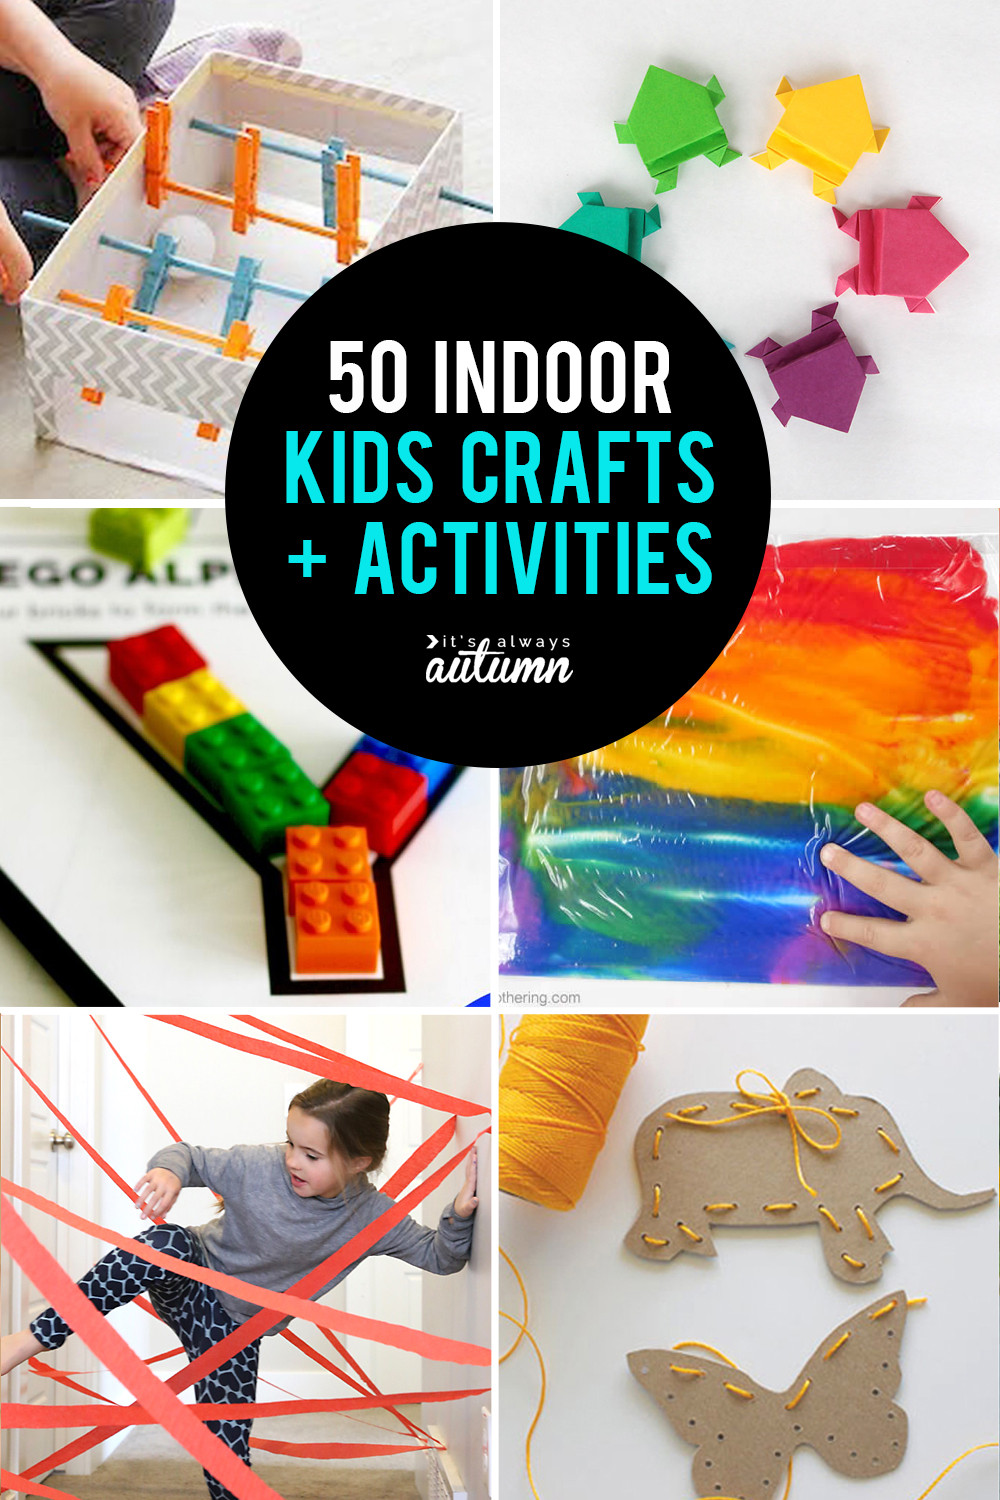 Fun Indoor Activities For Kids
 50 best indoor activities for kids It s Always Autumn